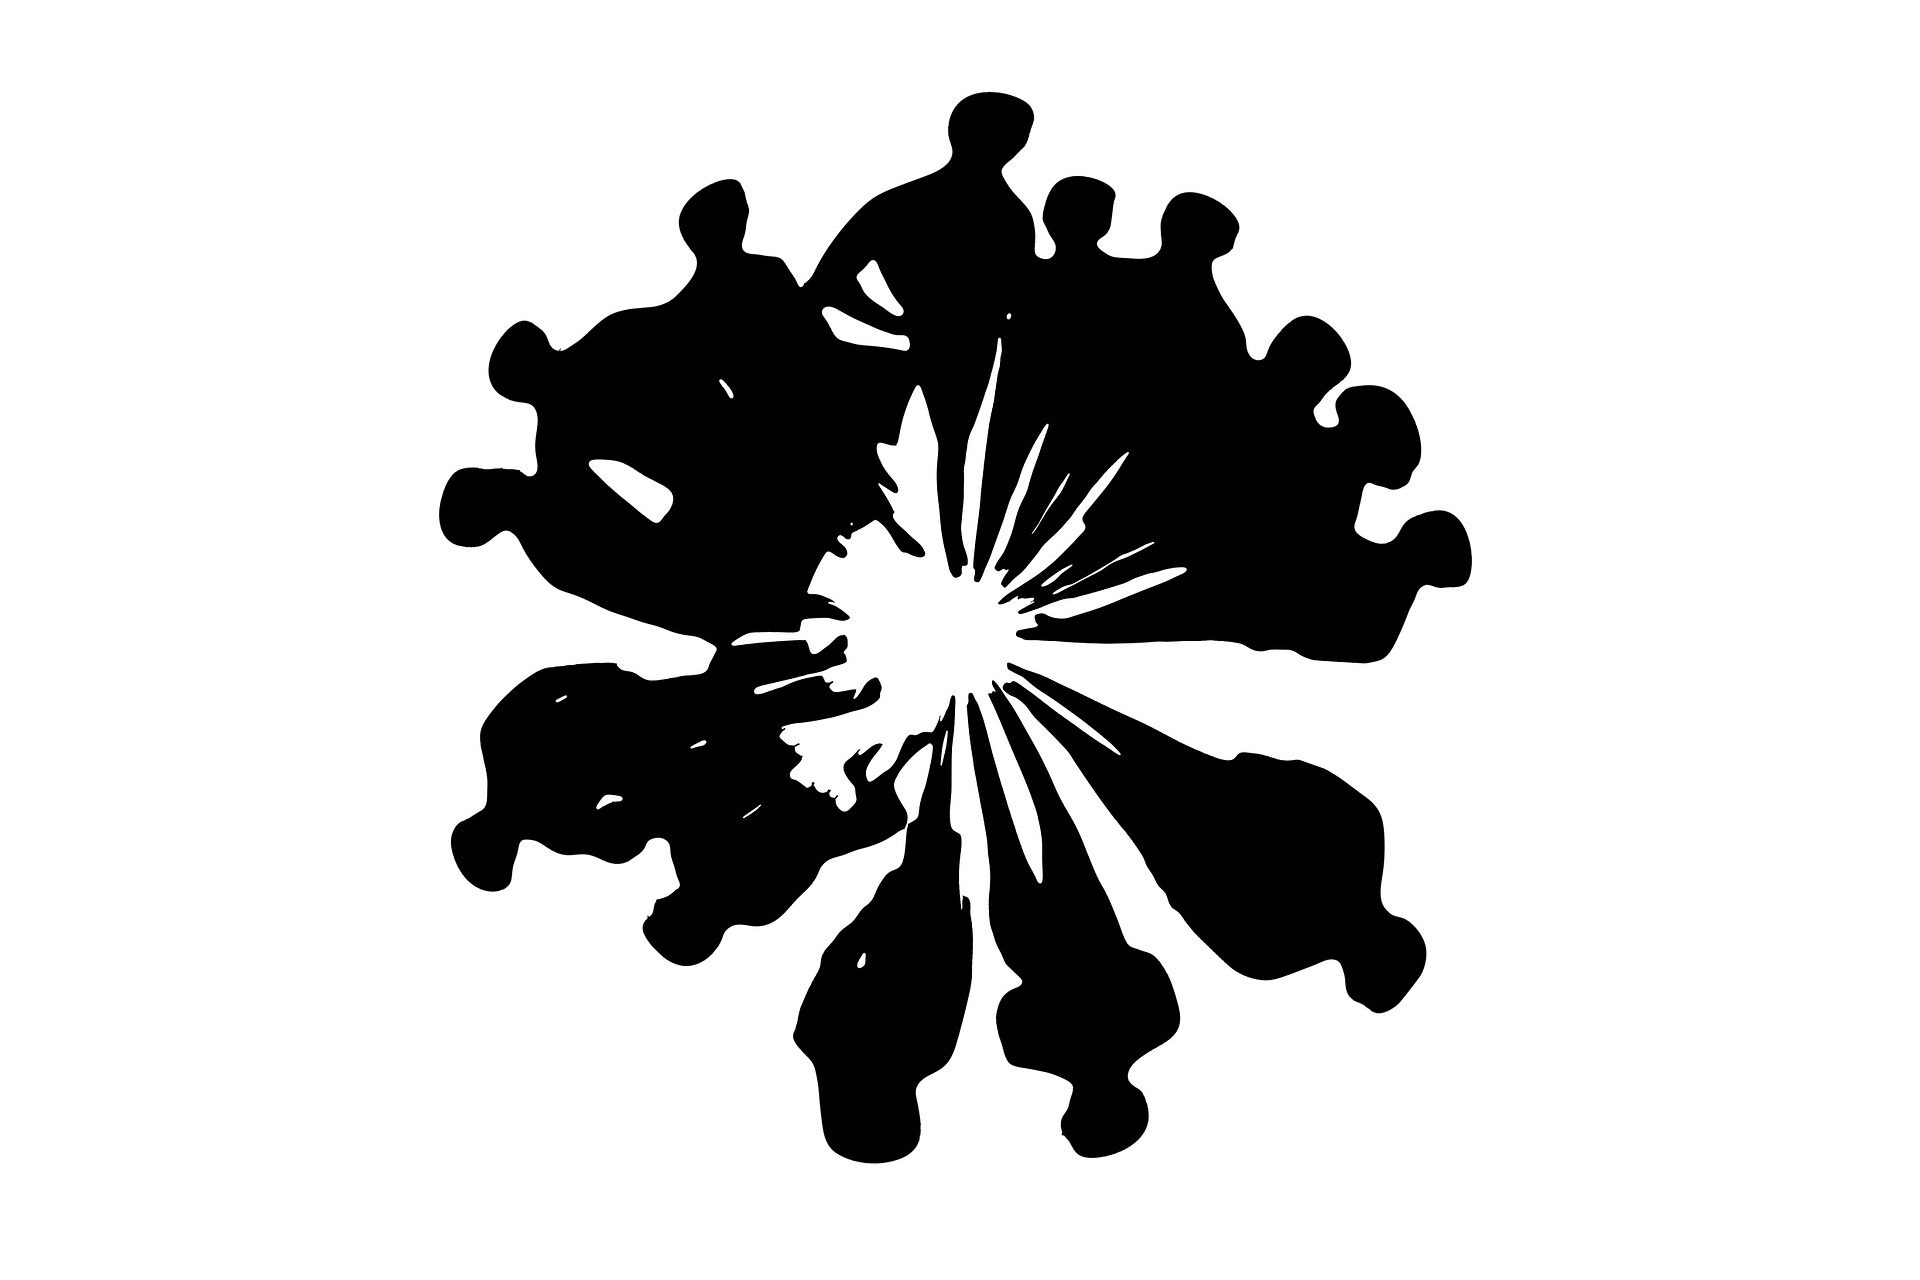 Grafik von schwarz gezeichneten Menschen, die im Kreis stehen. Veranschaulichung eines Teams.